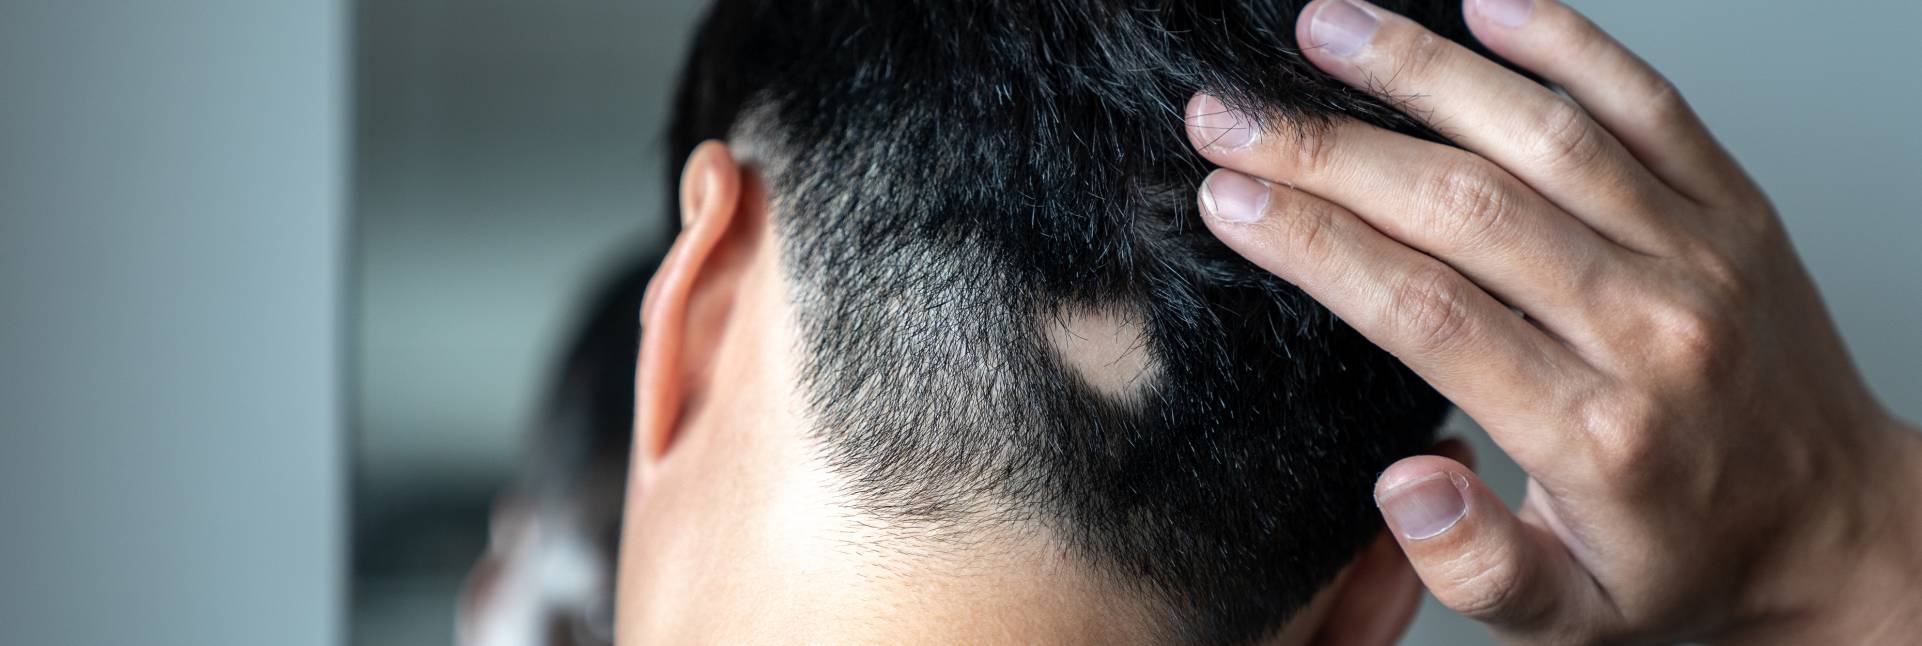 Alopecia areata: causas y tratamiento